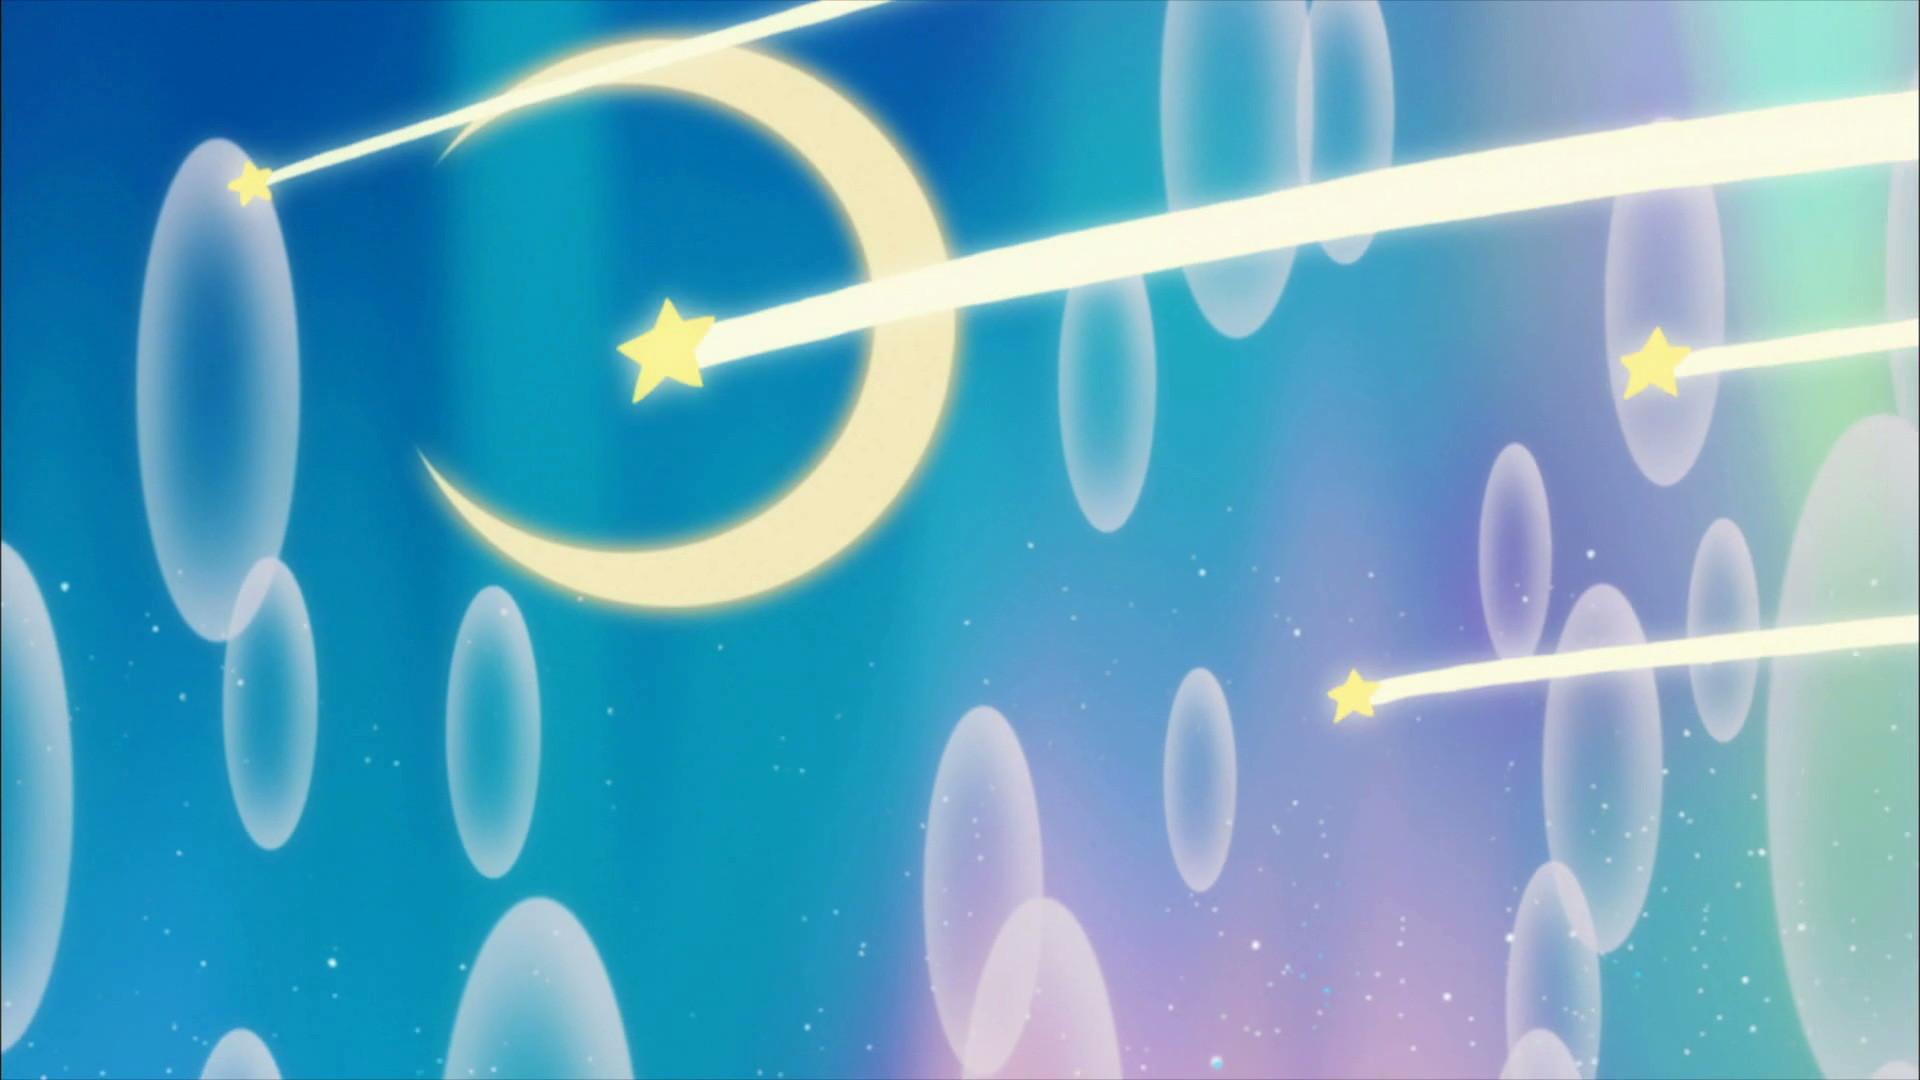 Sailor Moon Aesthetic Desktop Scenery Wallpapers - Wallpaper Cave